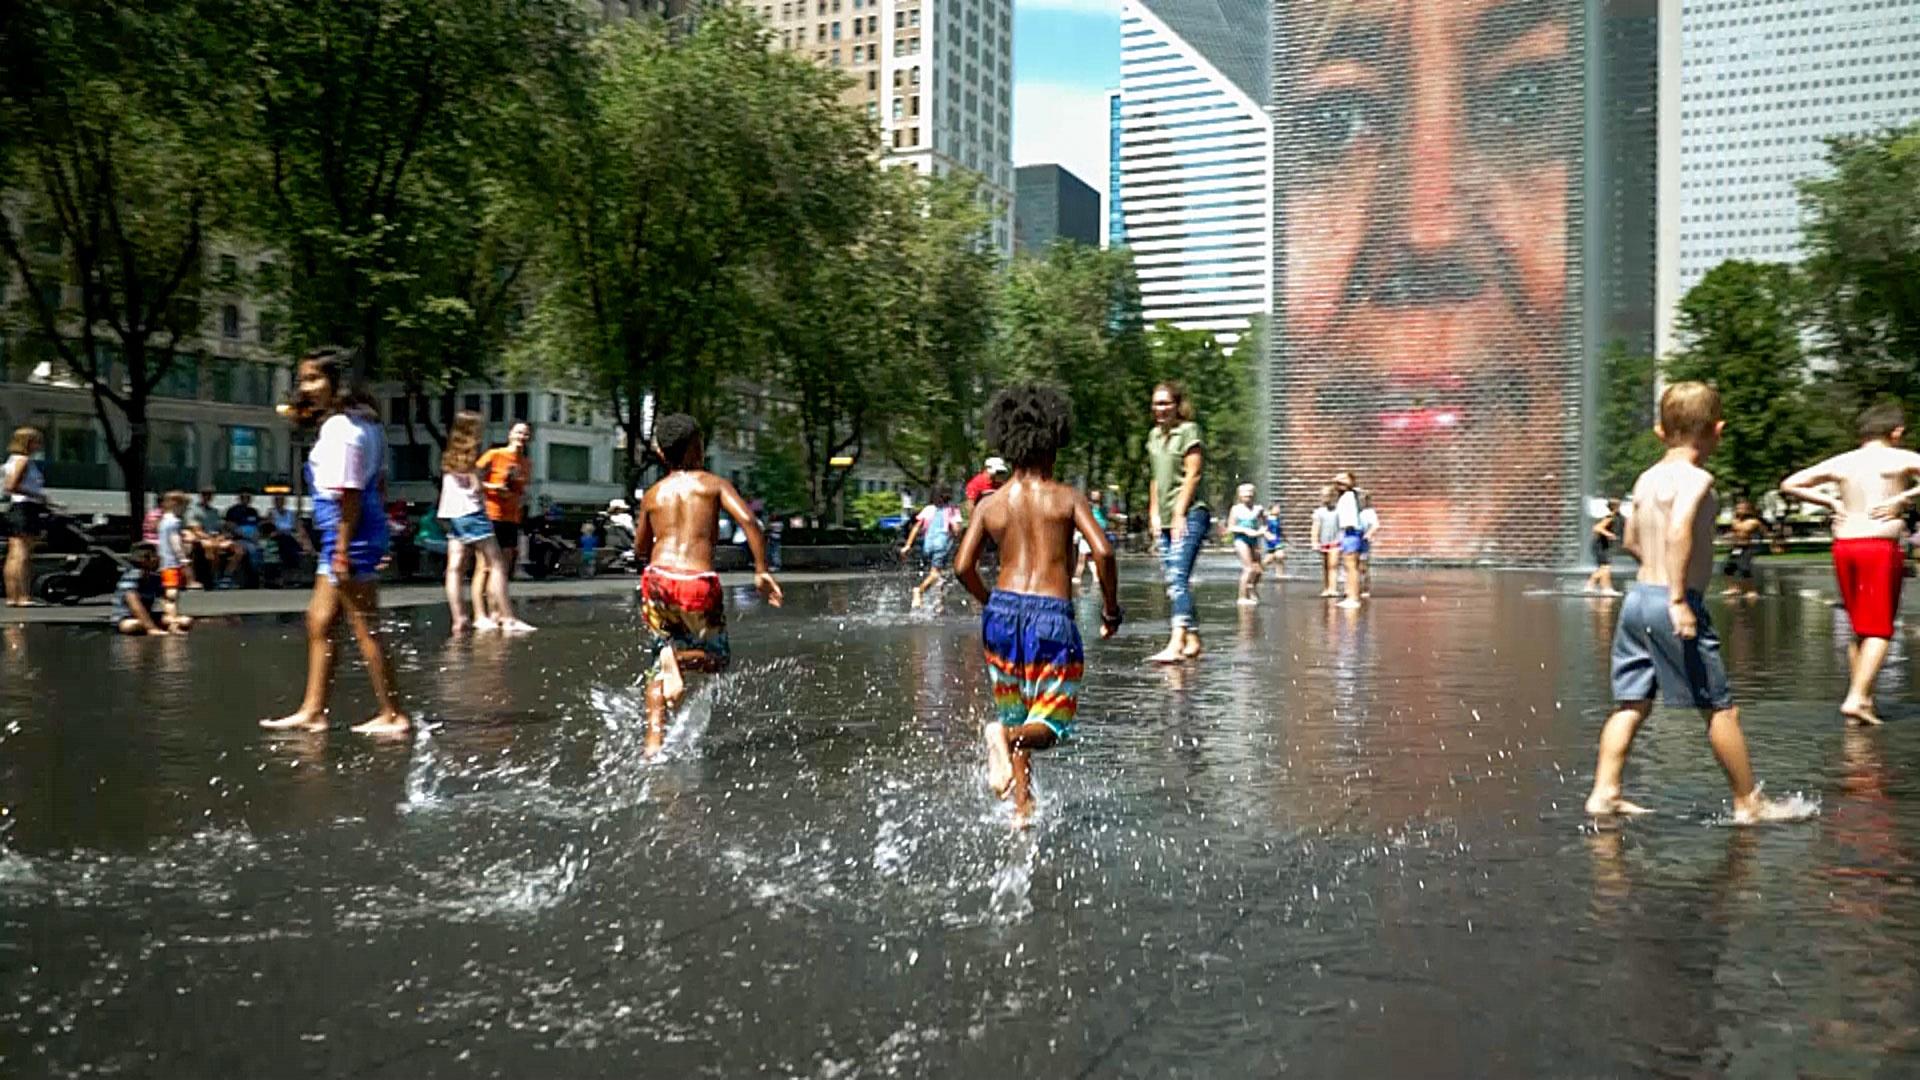 Children in swimsuits running through water in Millennium Park